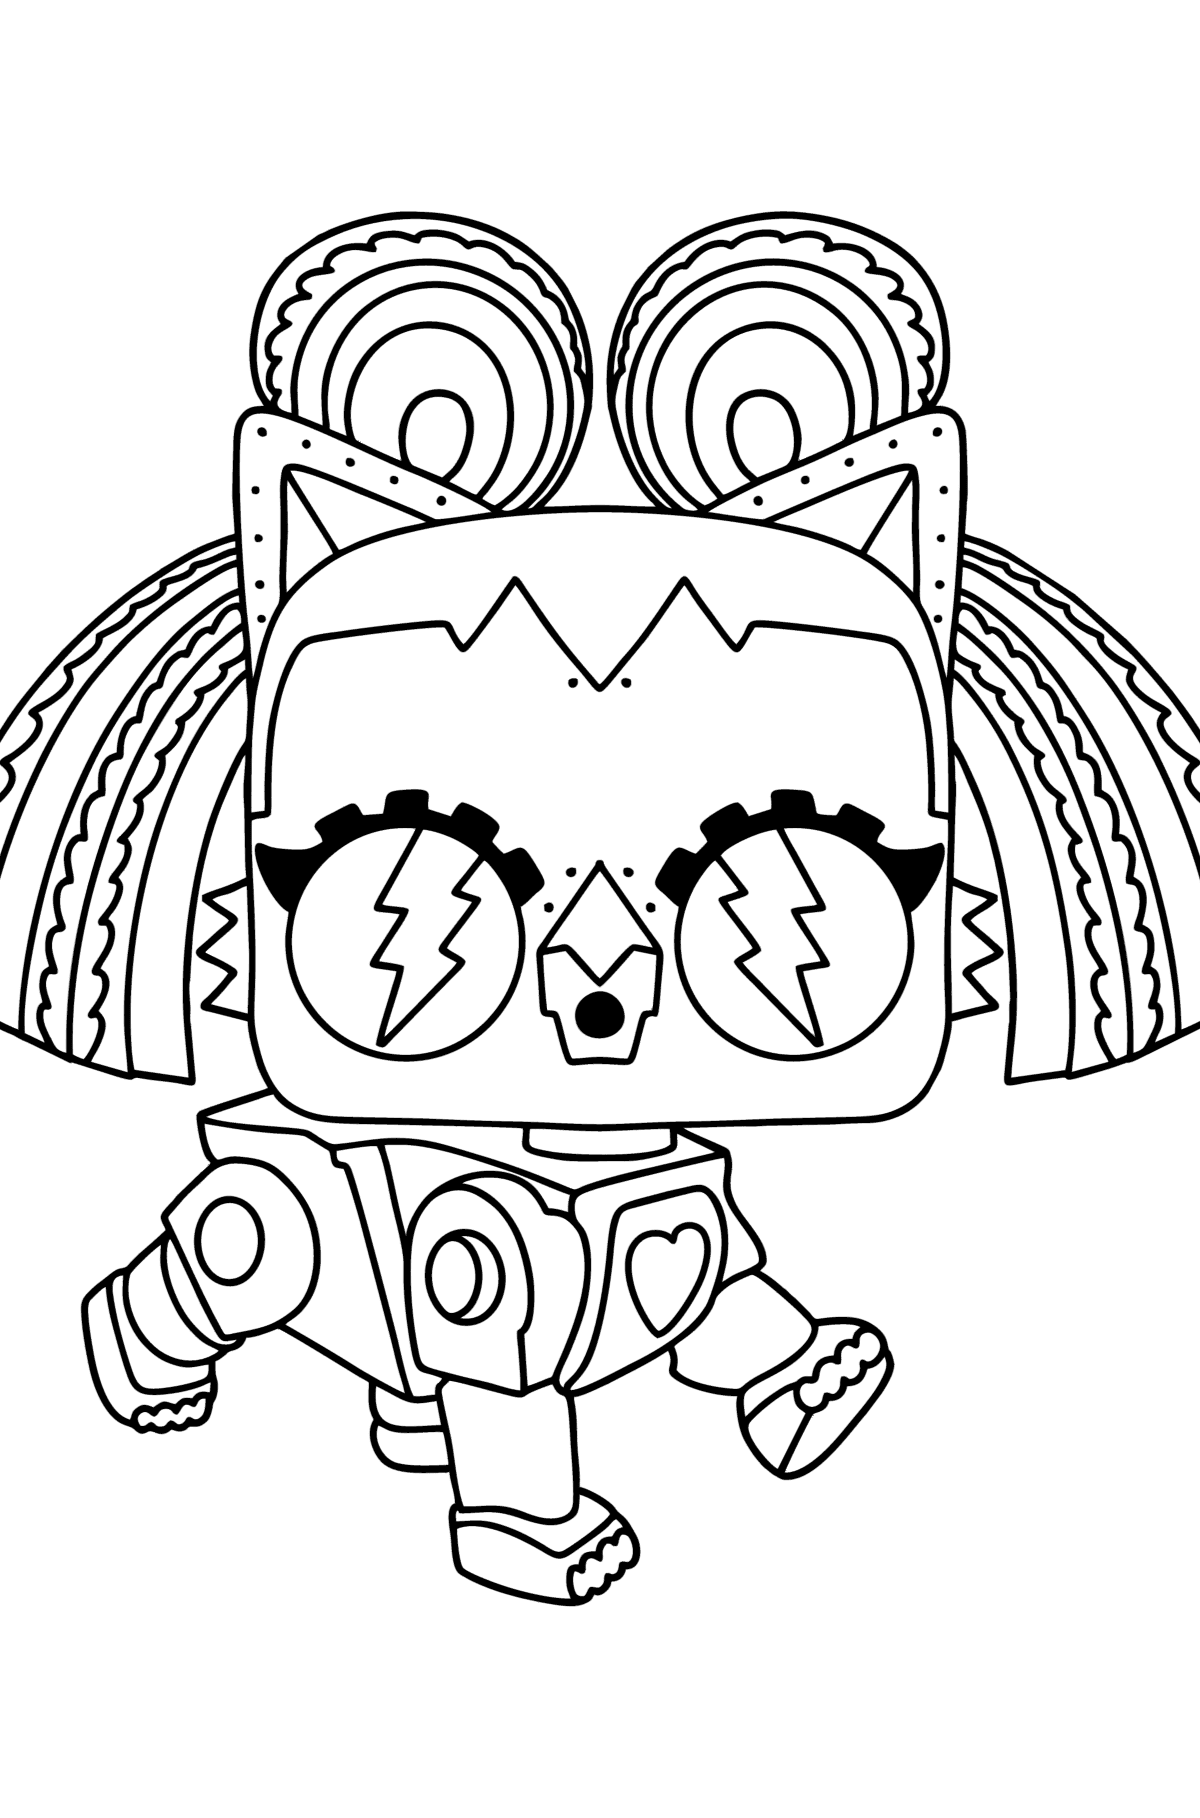 Disegno da colorare LOL Surprise Robo Kitty - Disegni da colorare per bambini